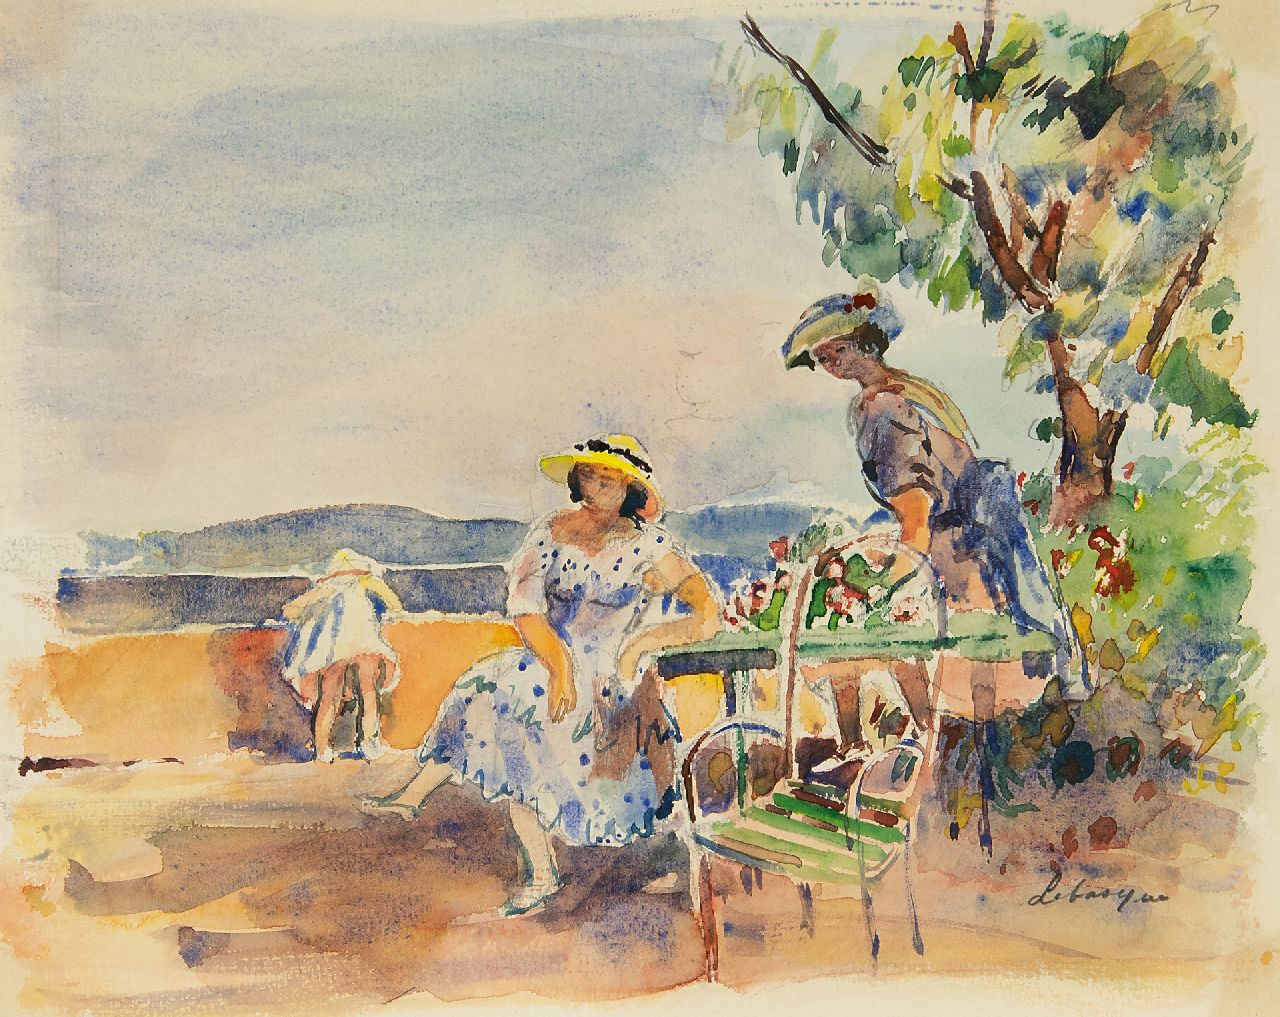 Lebasque H.  | Joseph 'Henri' Baptiste Lebasque, Sur la terrasse, watercolour on paper 23.0 x 28.0 cm, signed l.r.